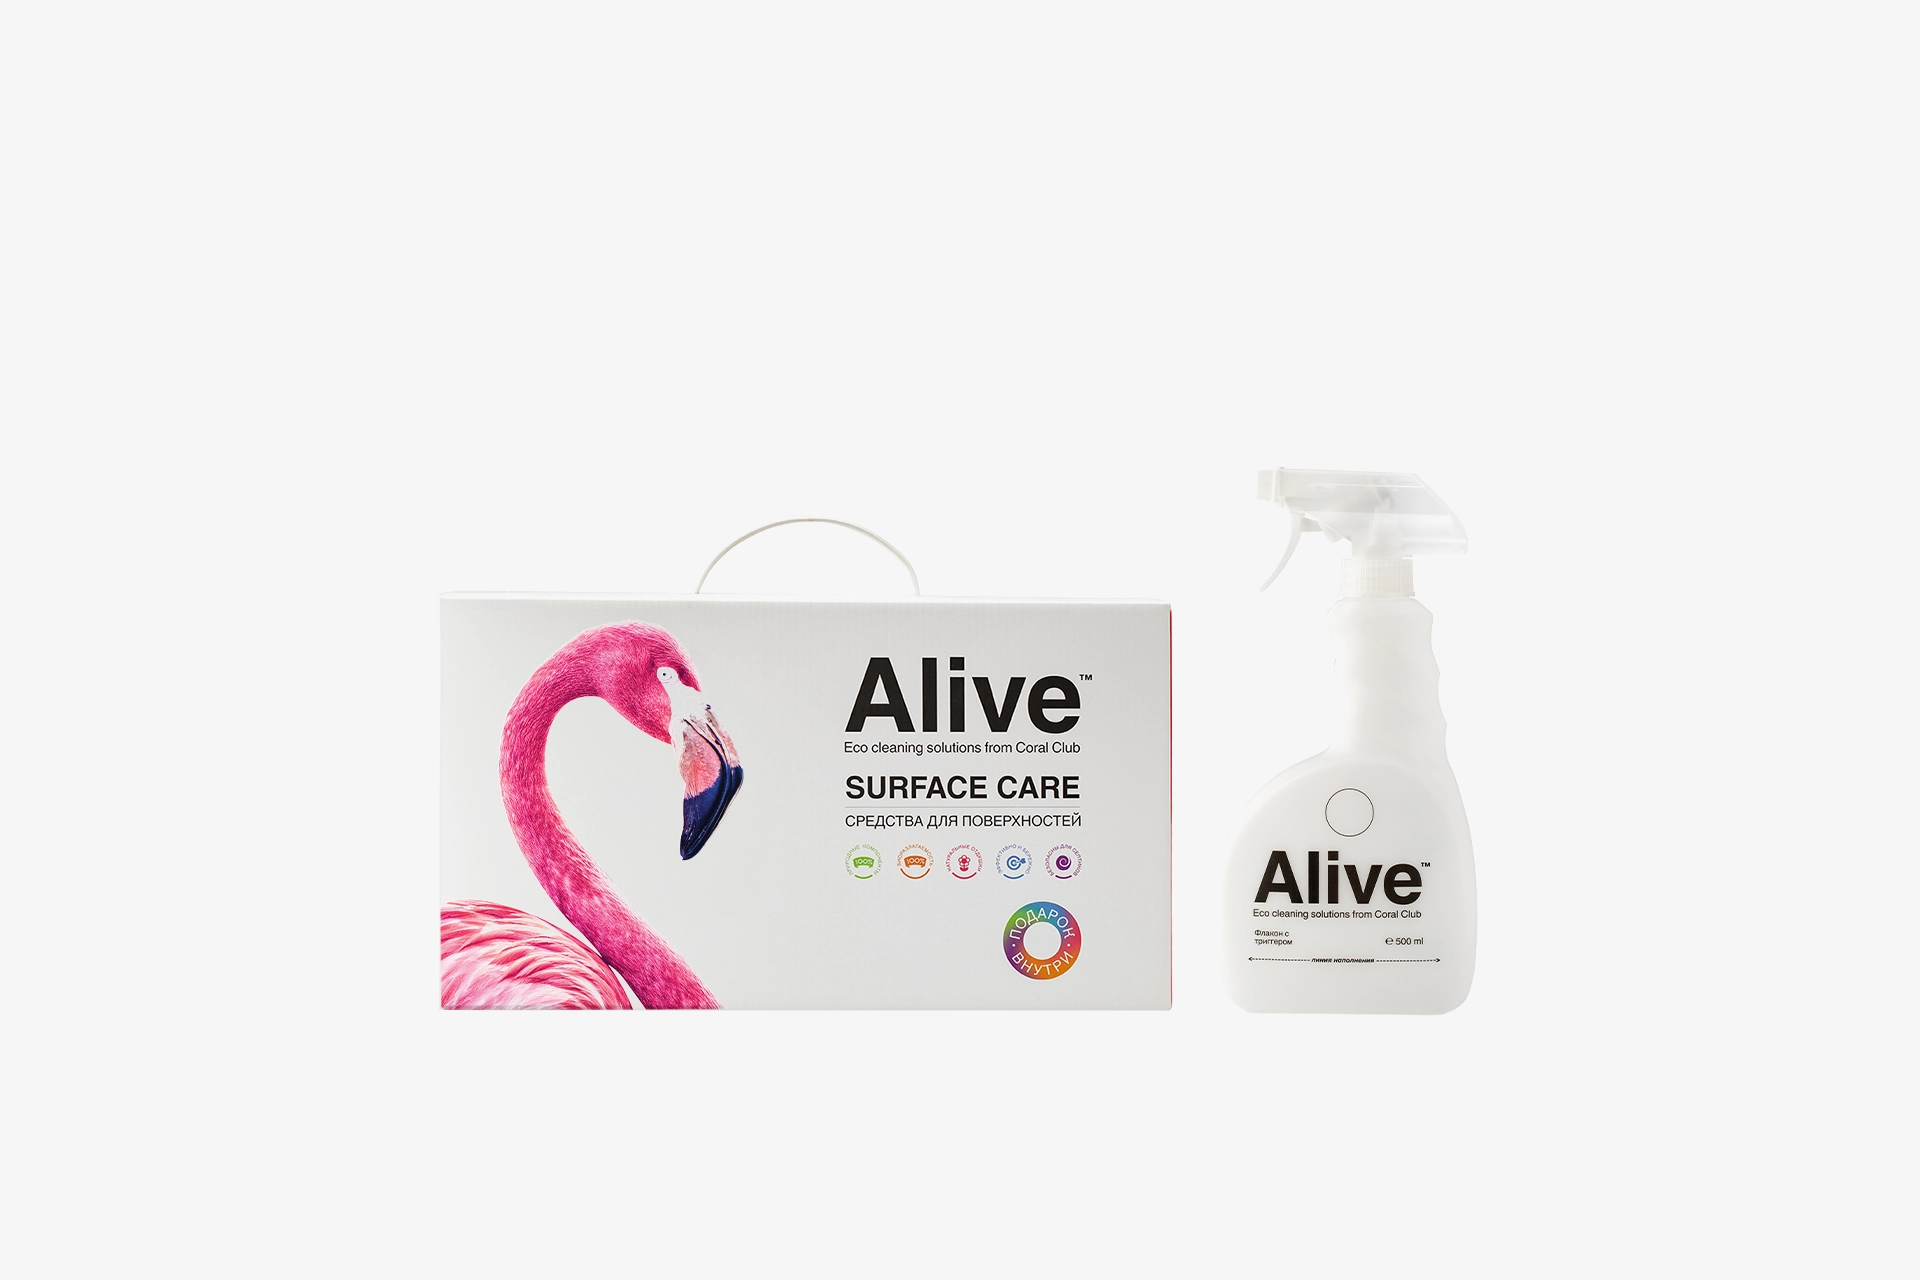 Alive Colección de productos de limpieza del hogar